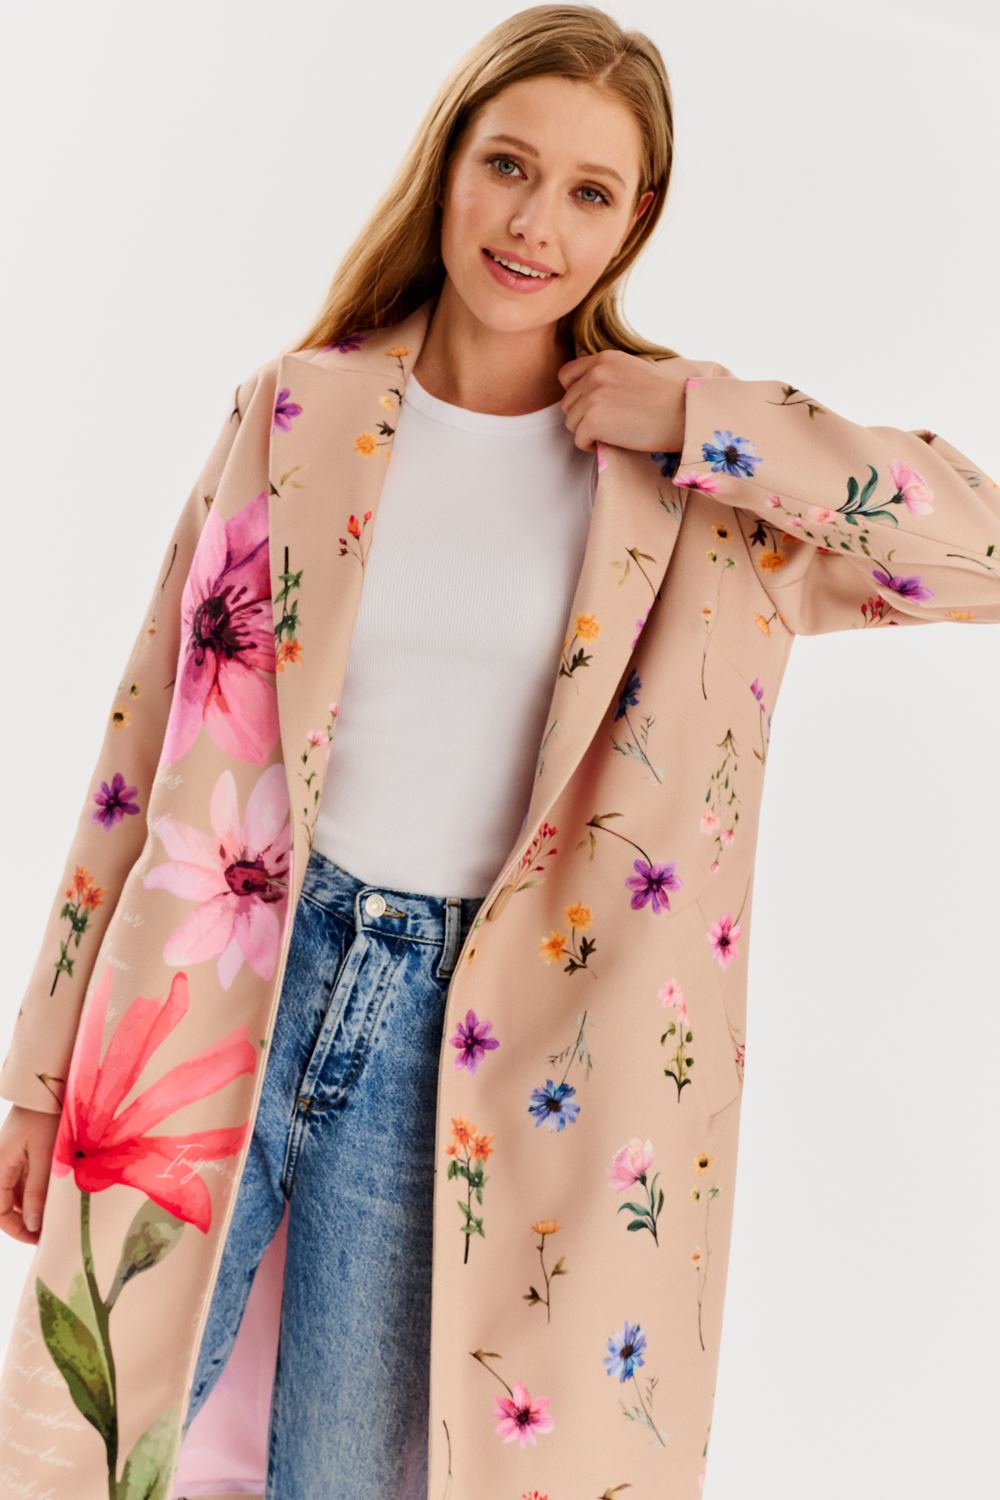 Floral Bloom classic coat